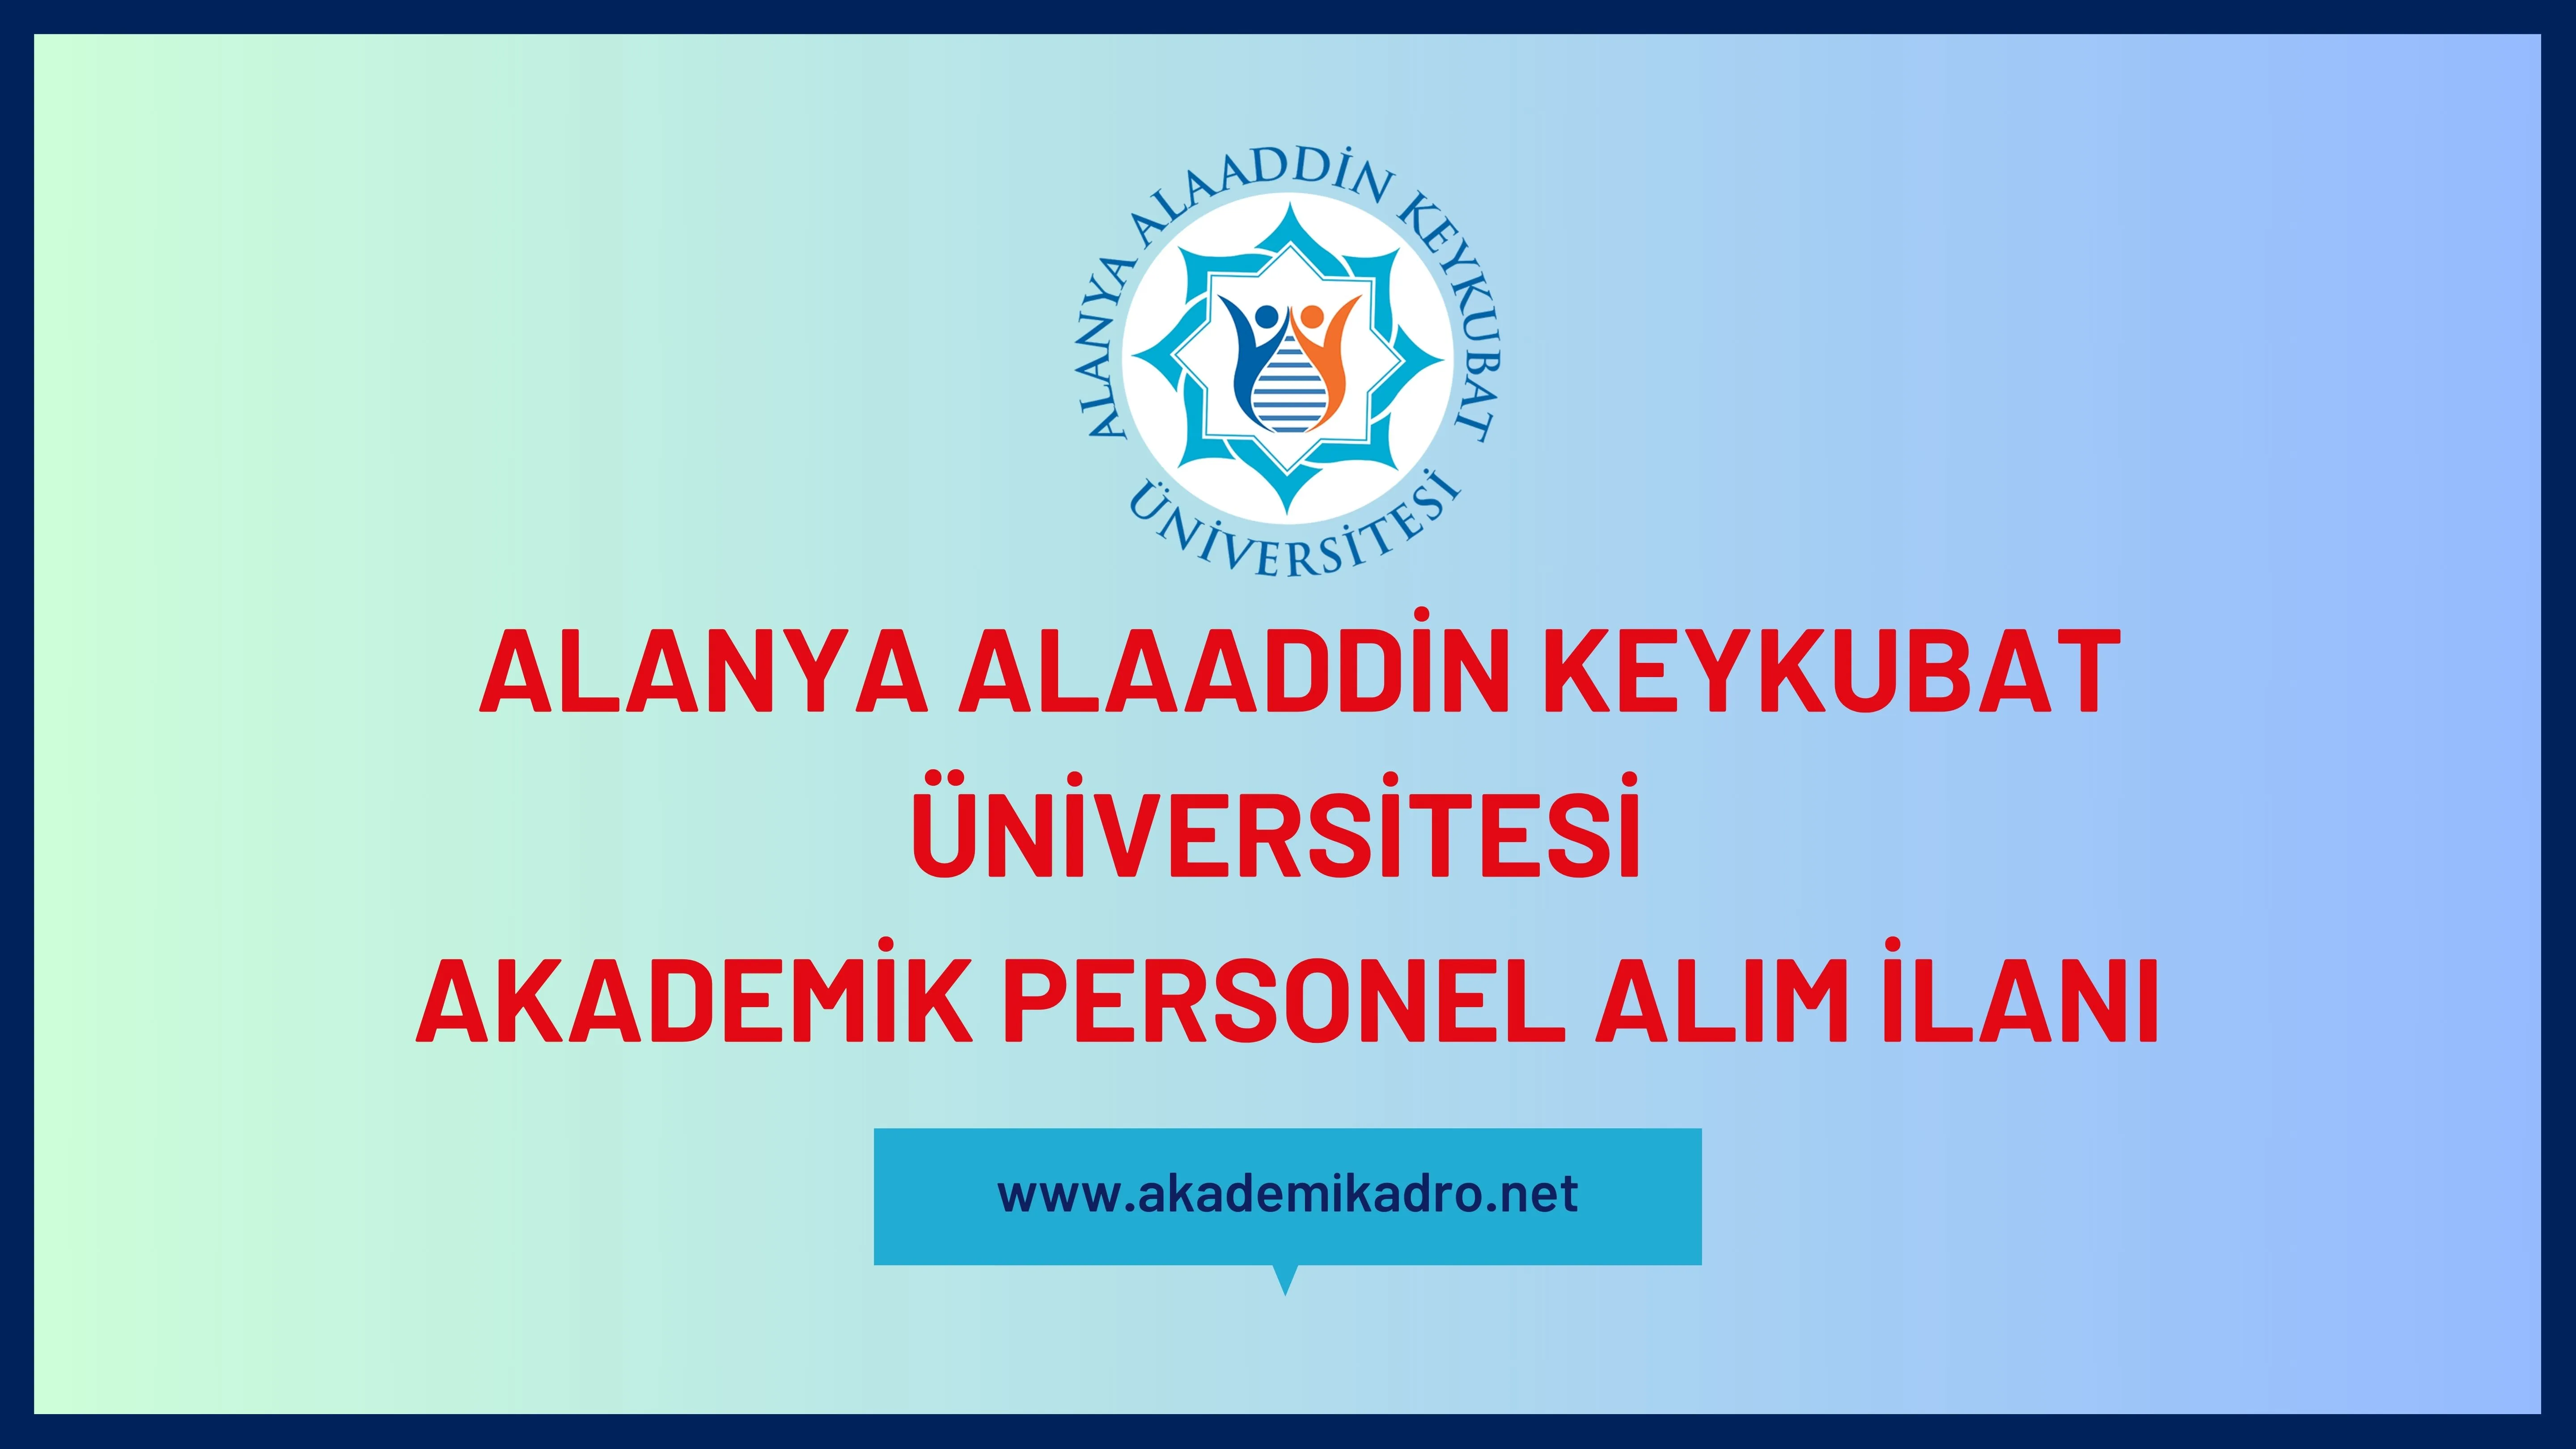 Alanya Alaaddin Keykubat Üniversitesi birçok alandan 30 akademik personel alacak.